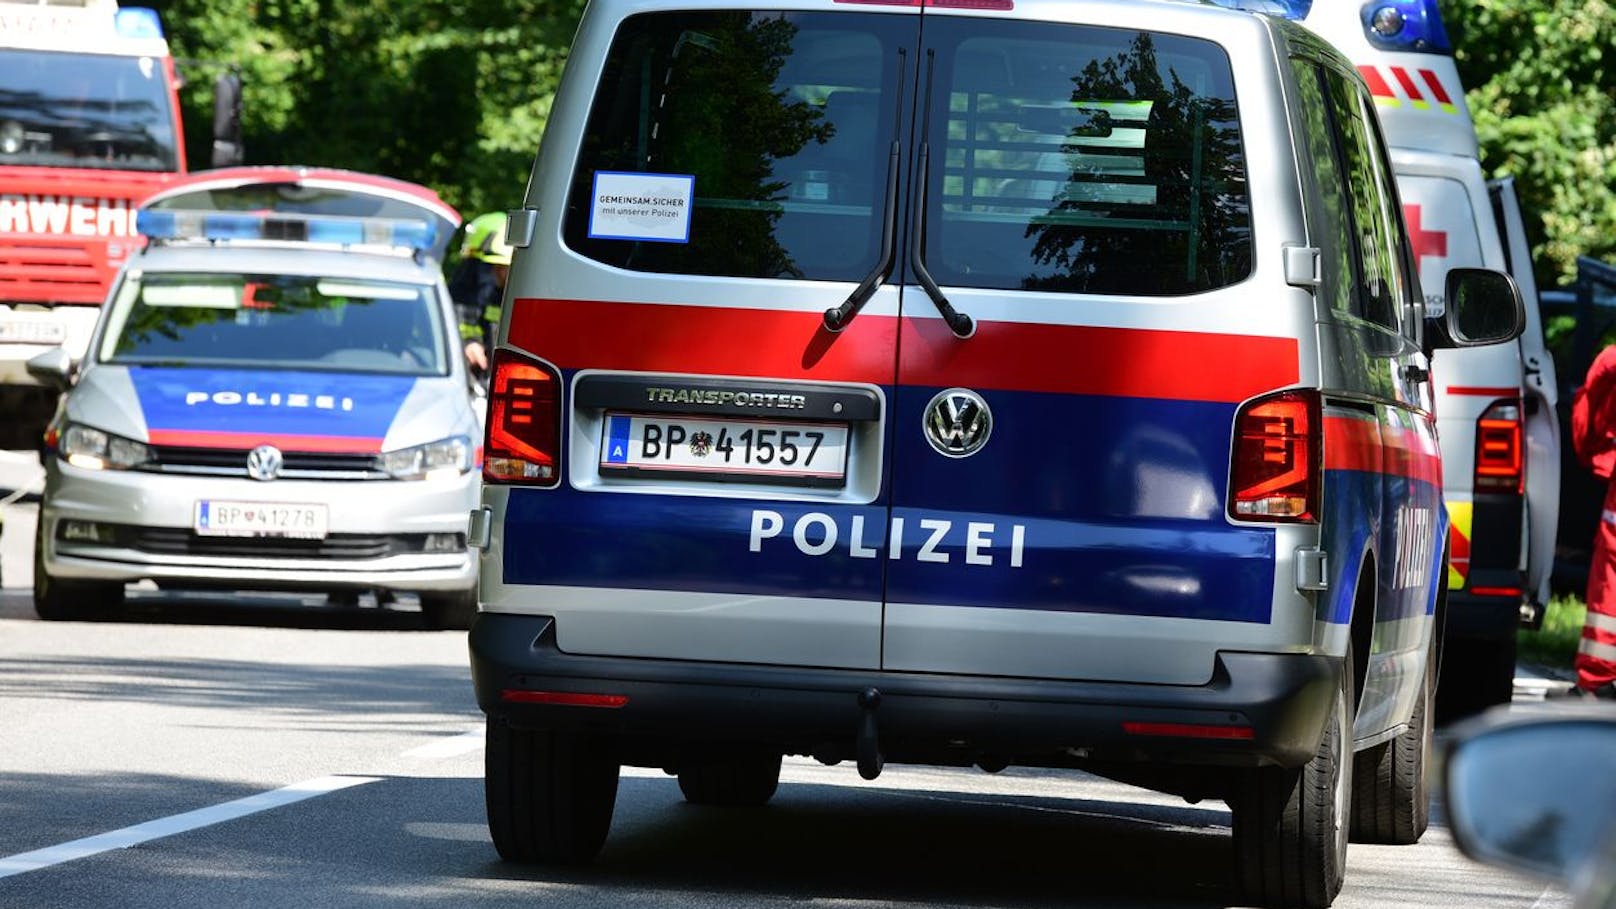 Groß-Razzia! Polizei entdeckt Koks, Geld und Waffen